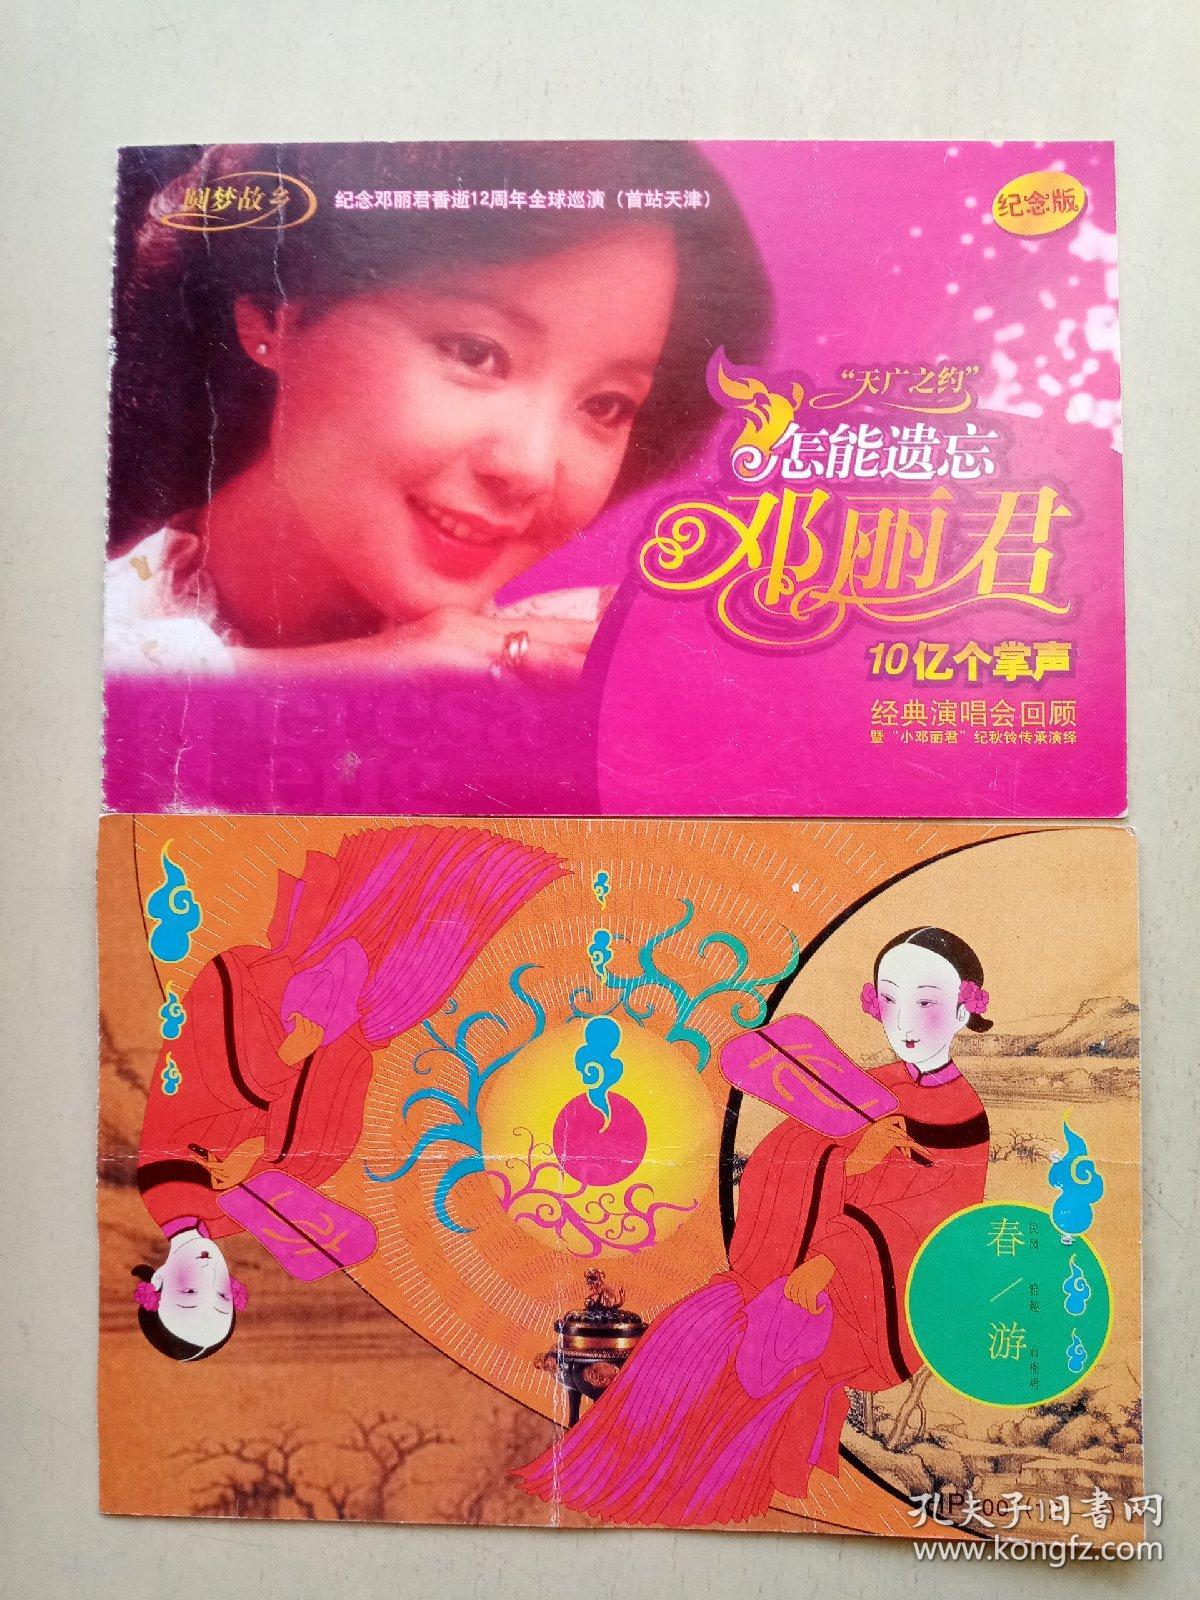 纪念邓丽君香逝12周年全球巡演纪念明信片共两枚。